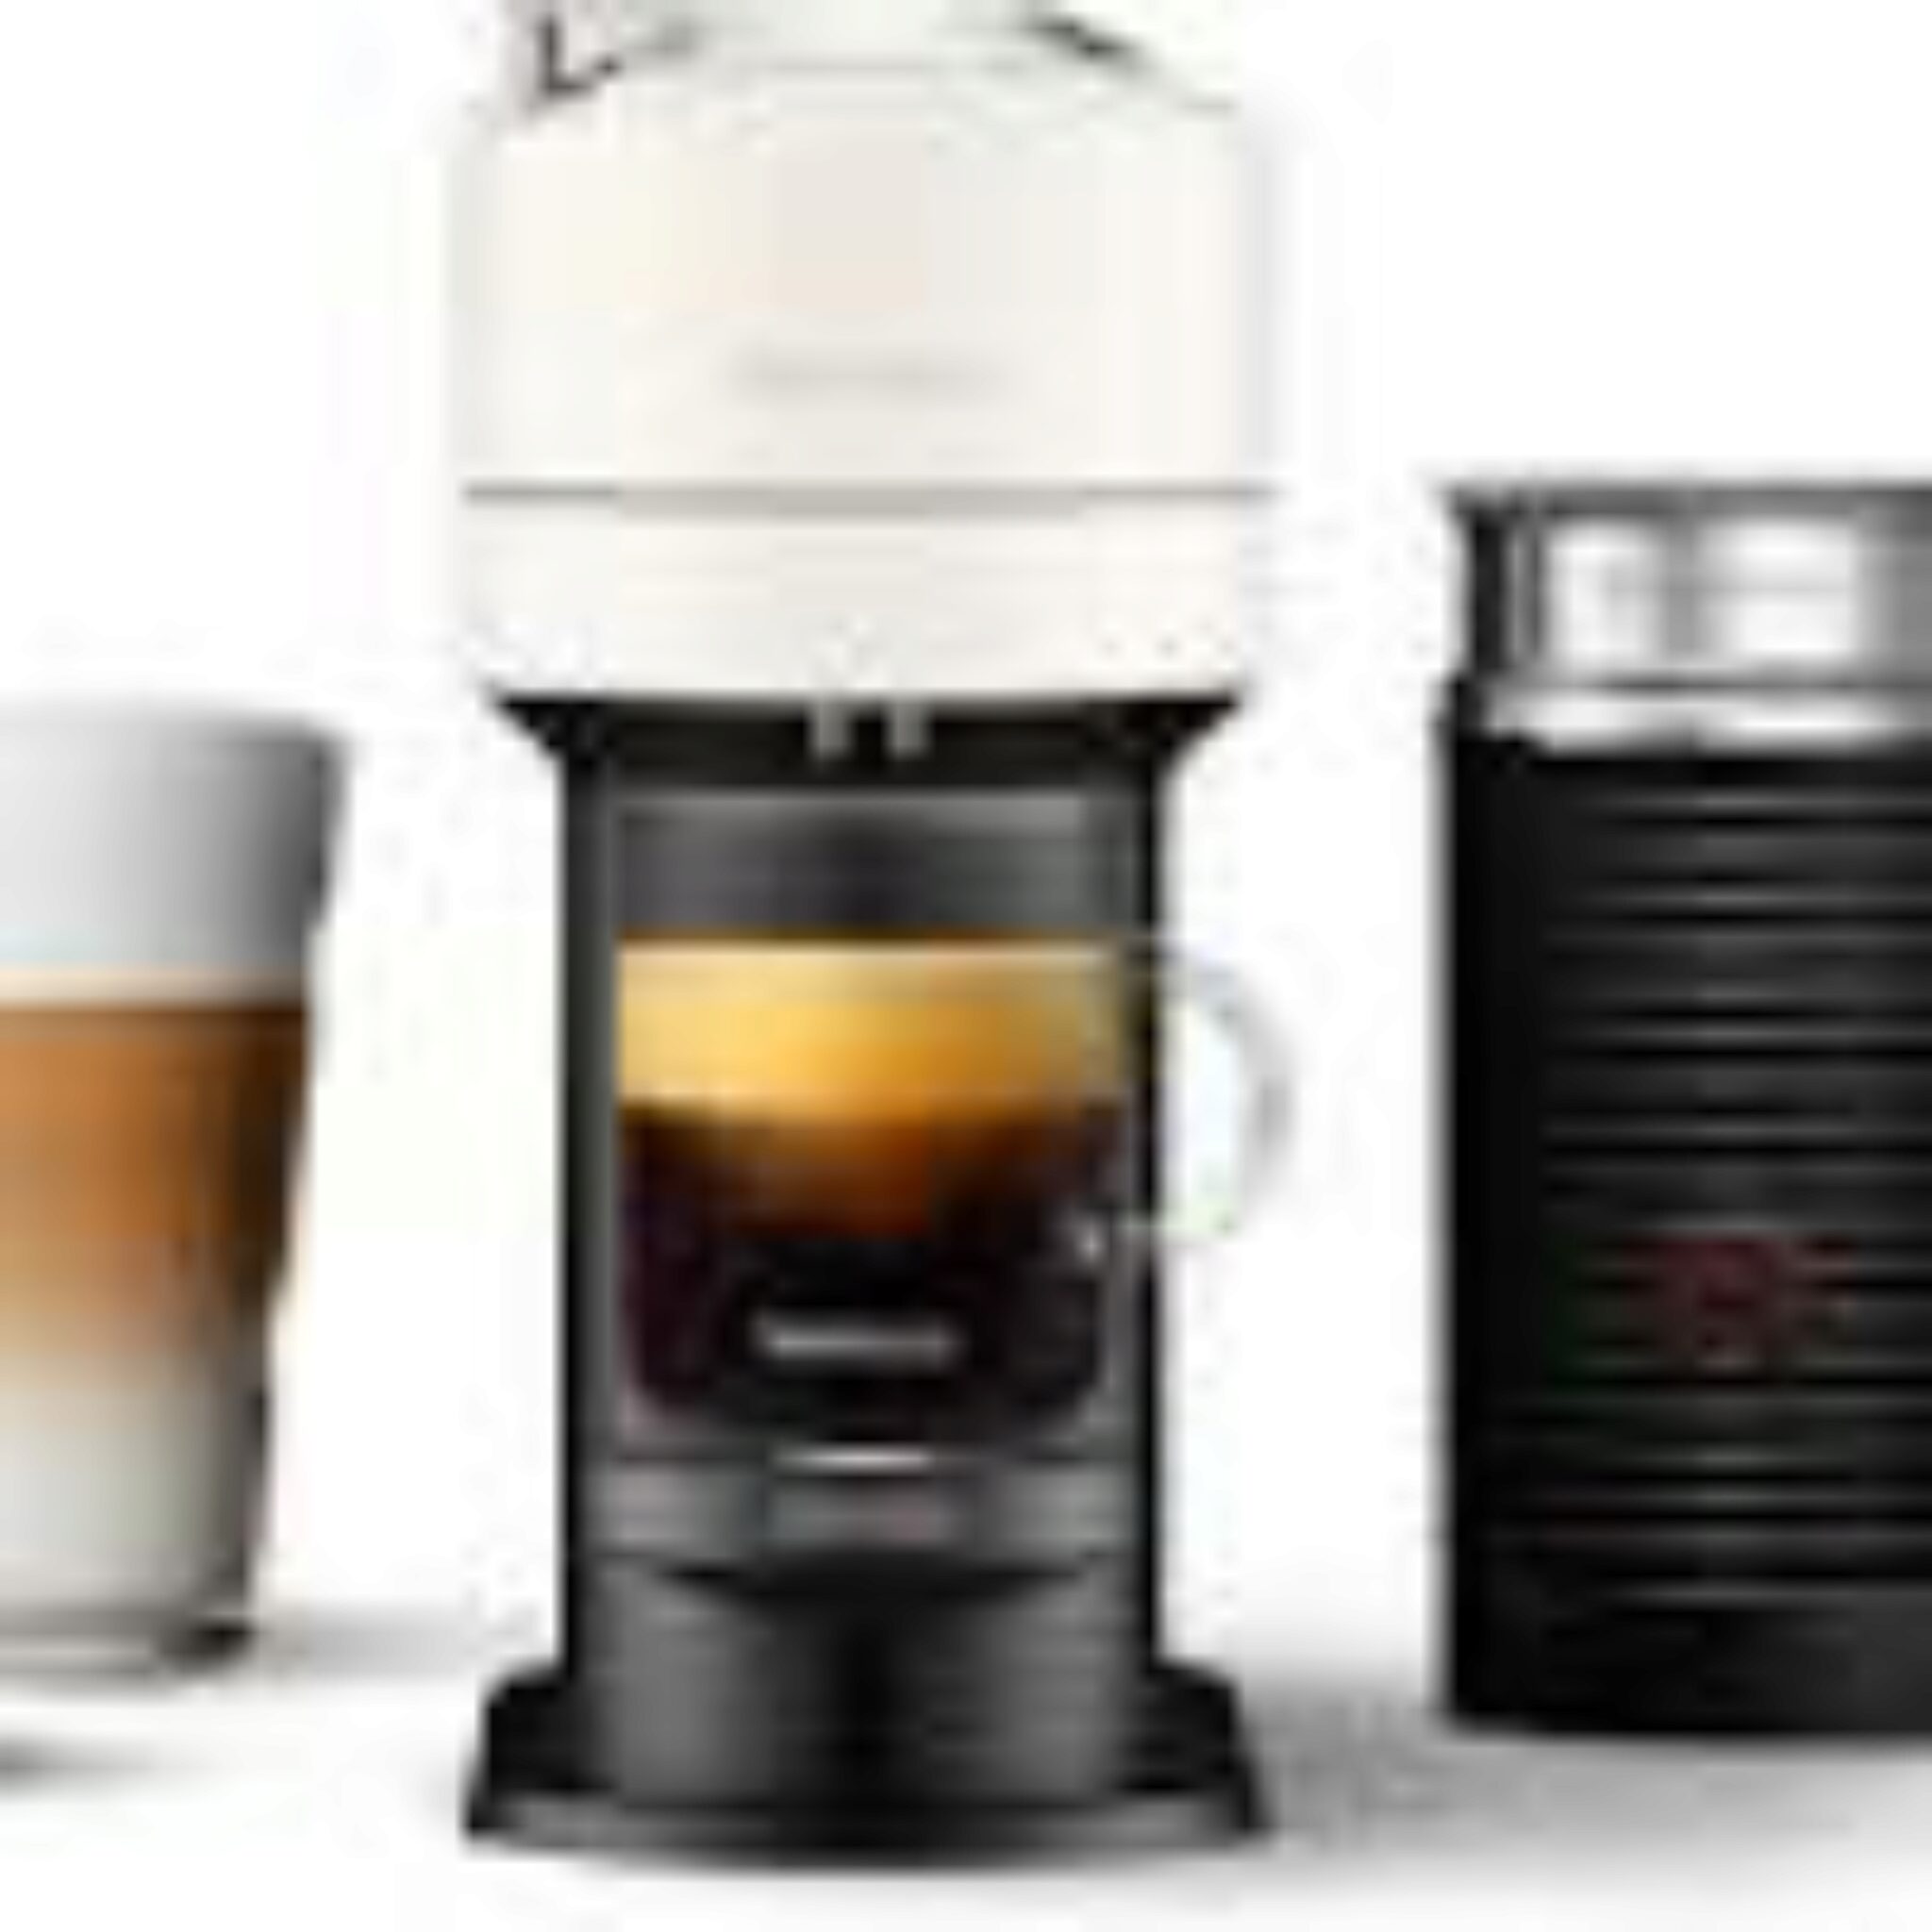 Nespresso Vertuo Next Frente A Plus. Comparaciones Y Revision